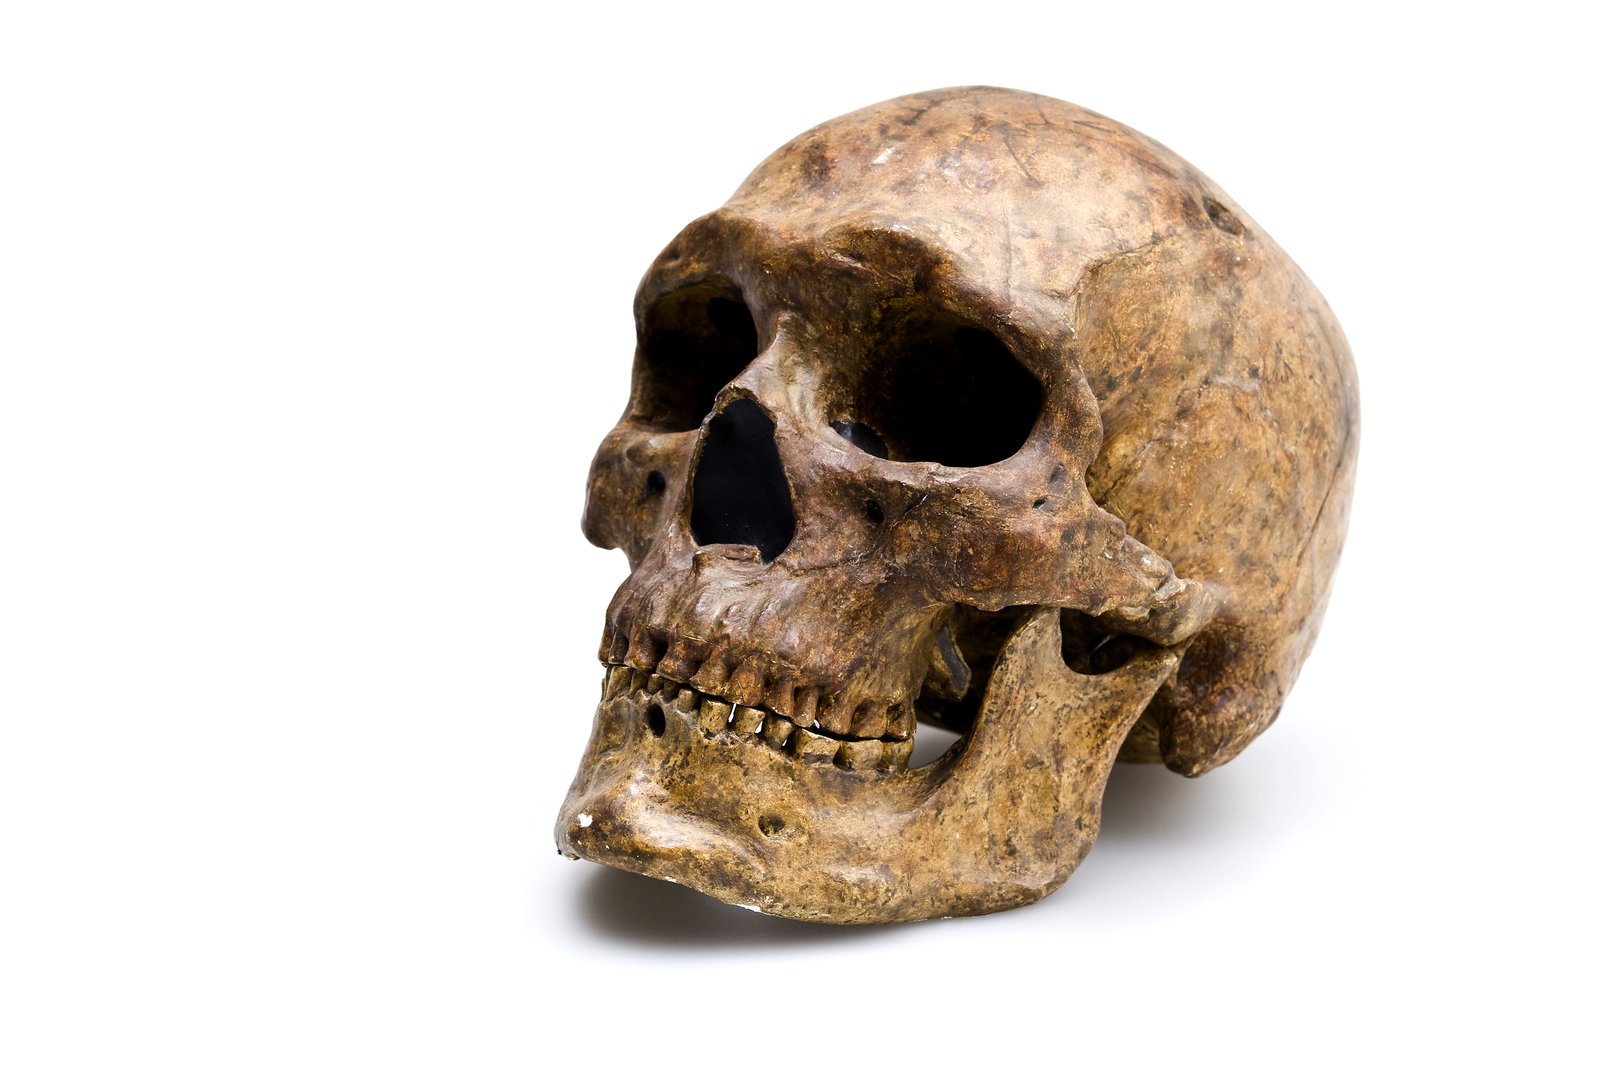 Salinan tengkorak Zhoukoudian Upper Cave 101. Tengkorak ini diklasifikasikan sebagai Homo sapiens dan ditemukan pada tahun 1933 di Zhoukoudian, Cina. Usianya sekitar 10.000 - 25.000 tahun. Gambar: Carl Bento © Australian Museum.